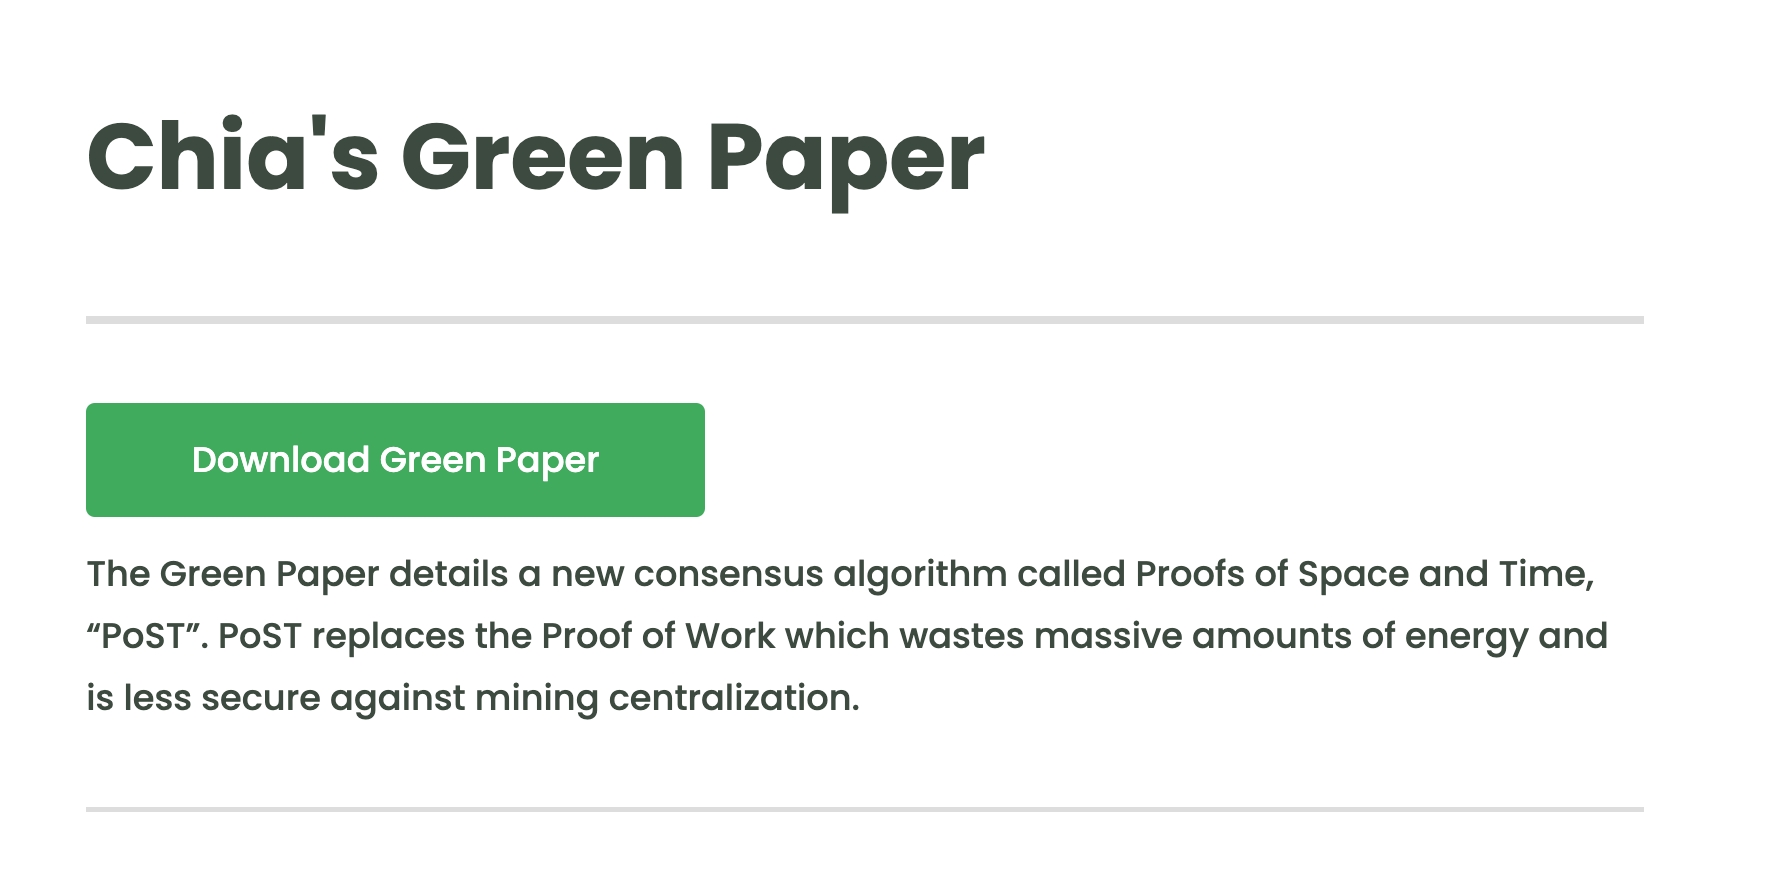 groene cryptomunten - Kijk naar de whitepaper van Groene Coins 